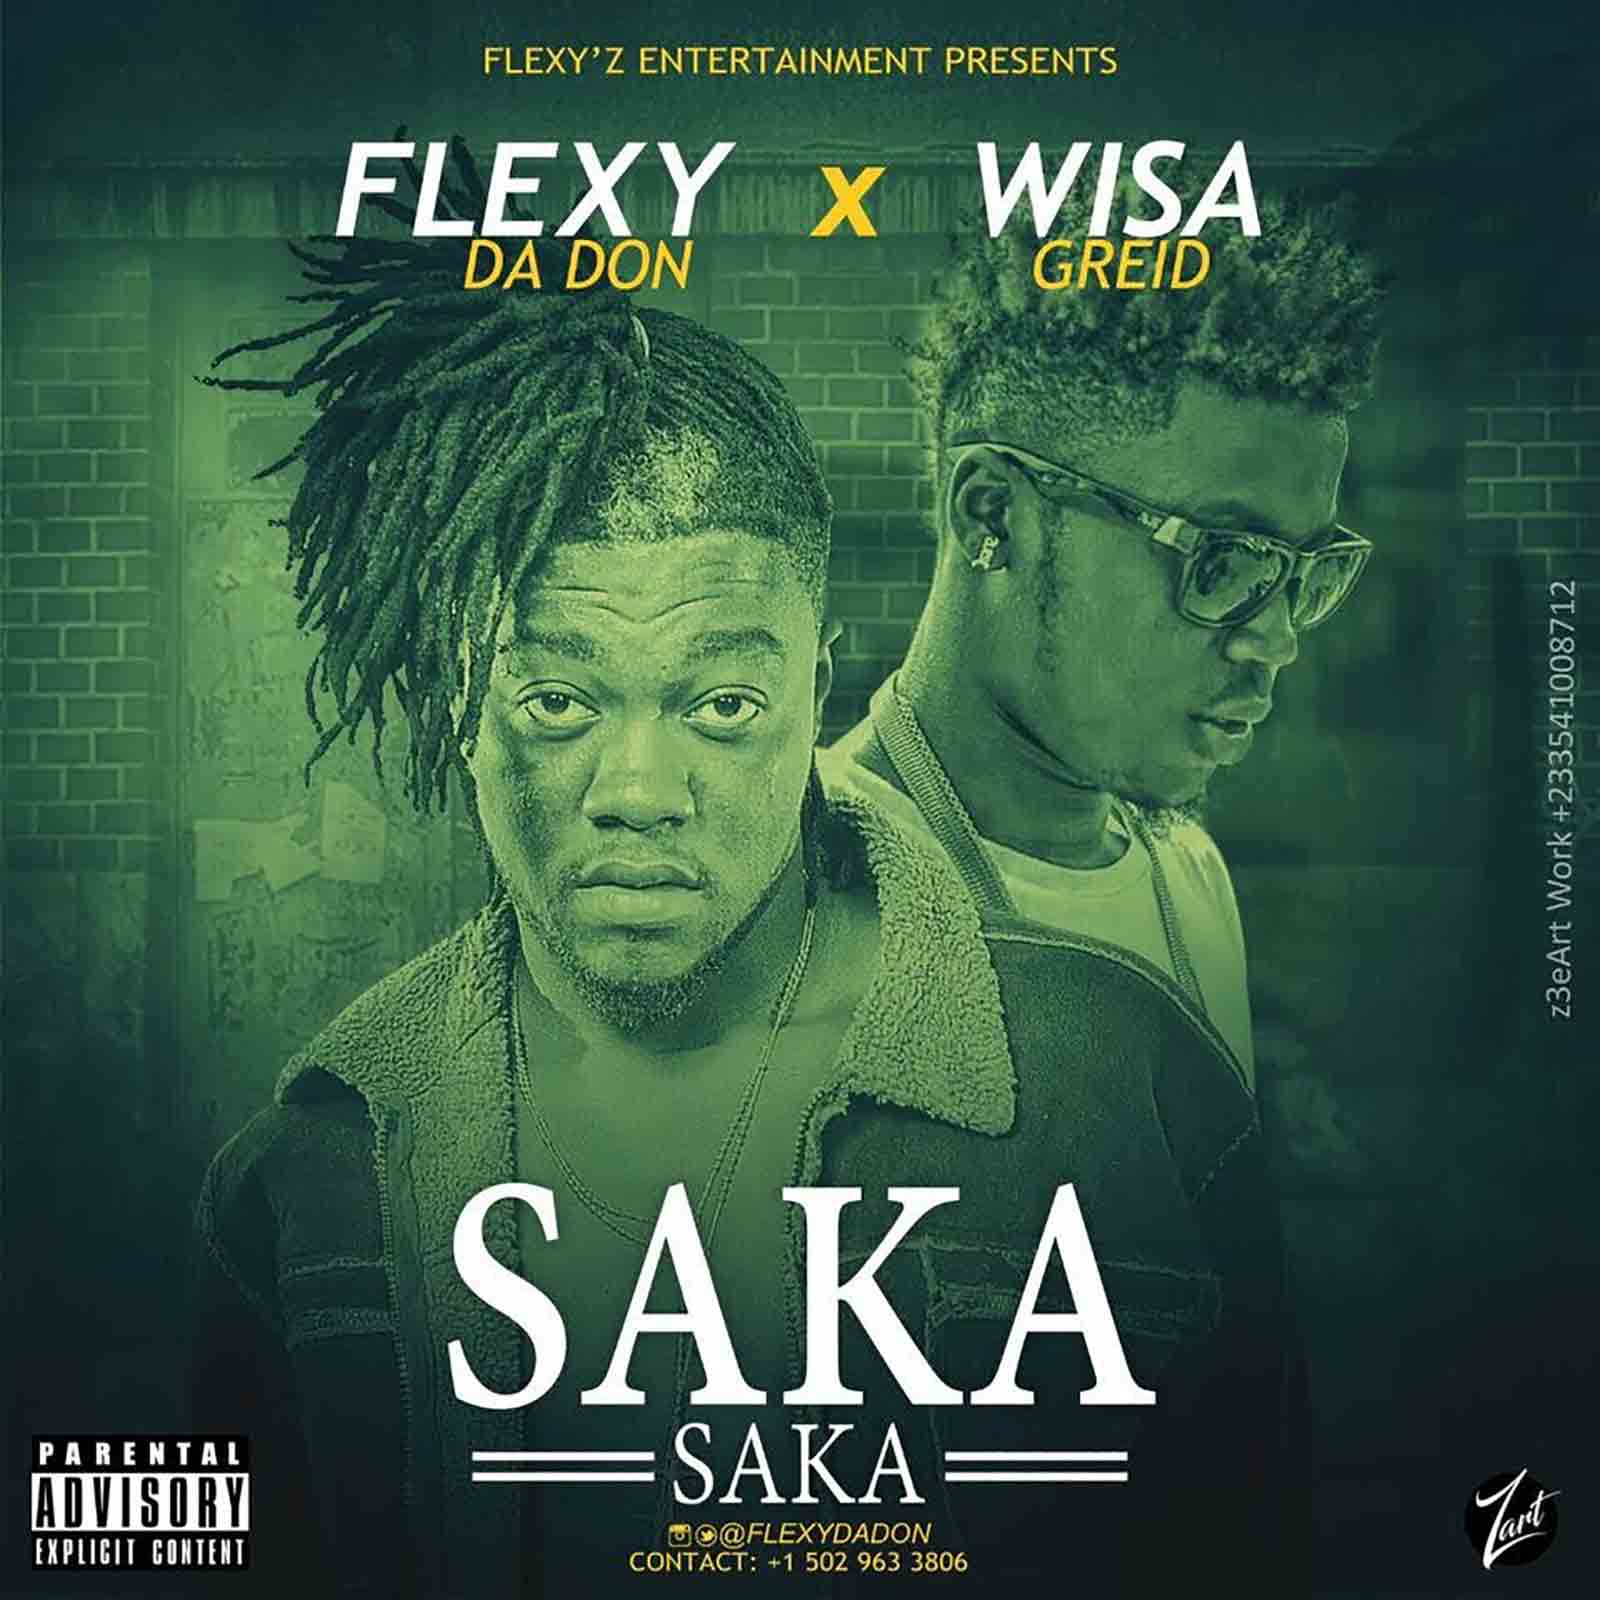 Saka Saka by Flexy Da Don feat. Wisa